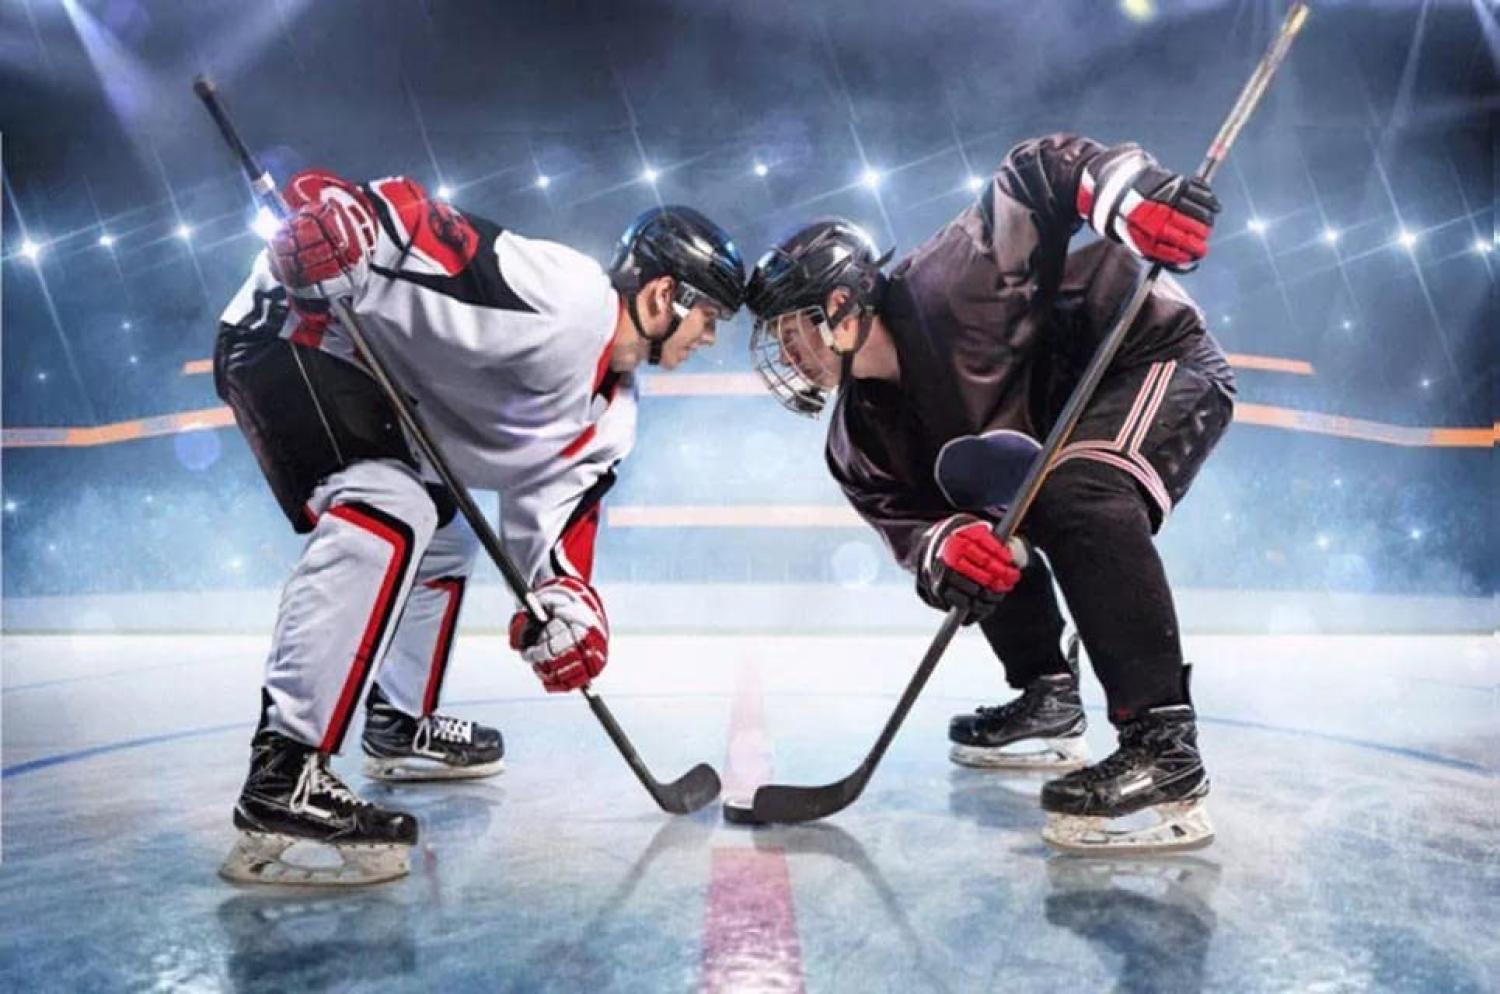 Kuscheldecke Eishockey Hockey Microfaser Flauschdecke 100 x 140 cm Bild 1